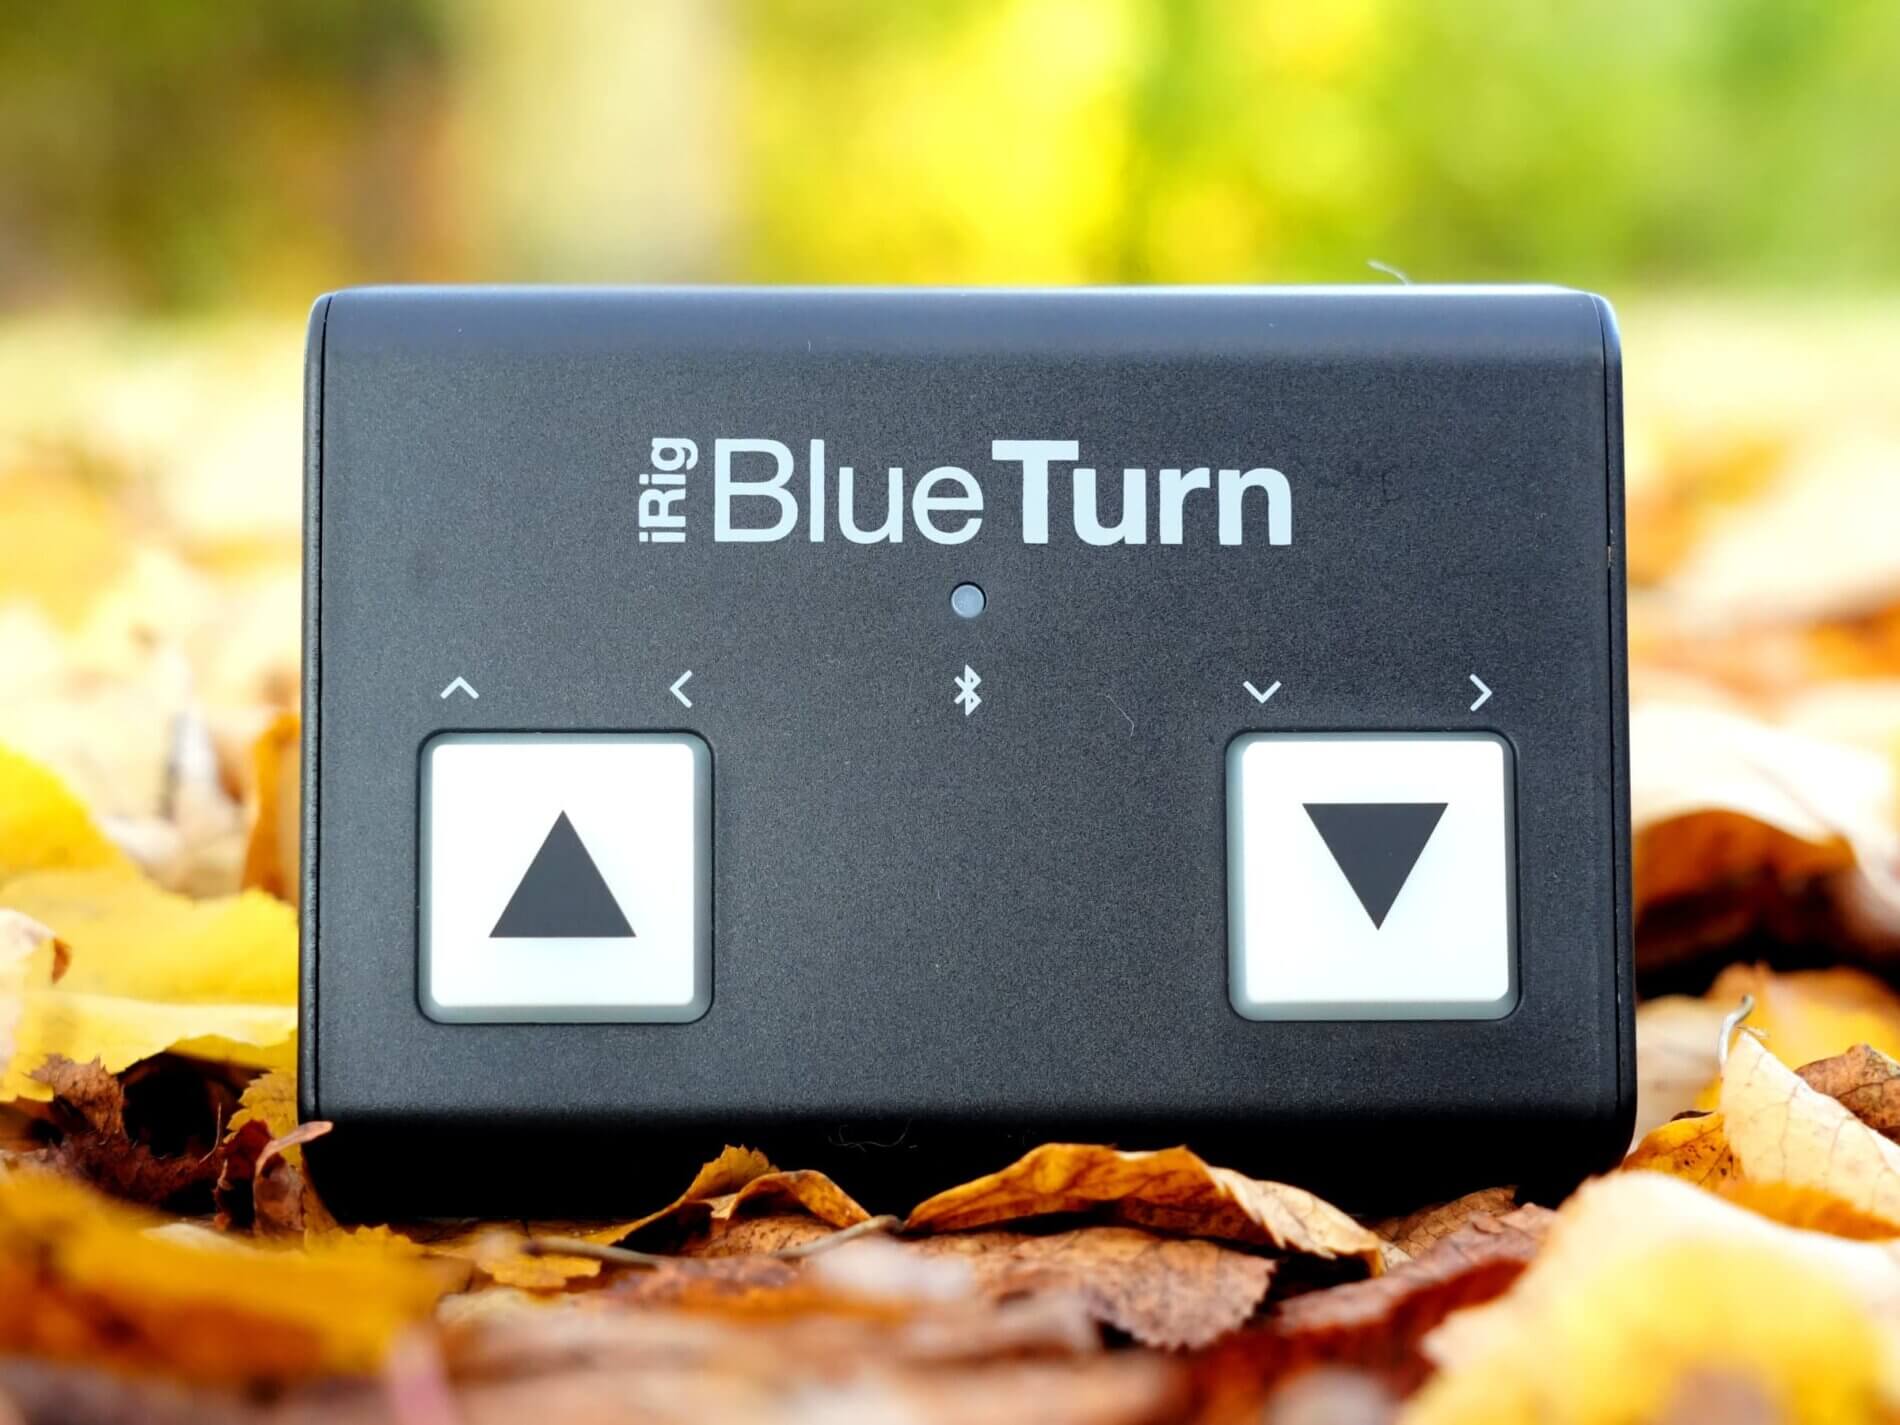 Fußpedal zum Seintenumblättern, Bluetooth Umblätterer für Tablet oder iPad - iRig Blue Turn (IK Multimedia)